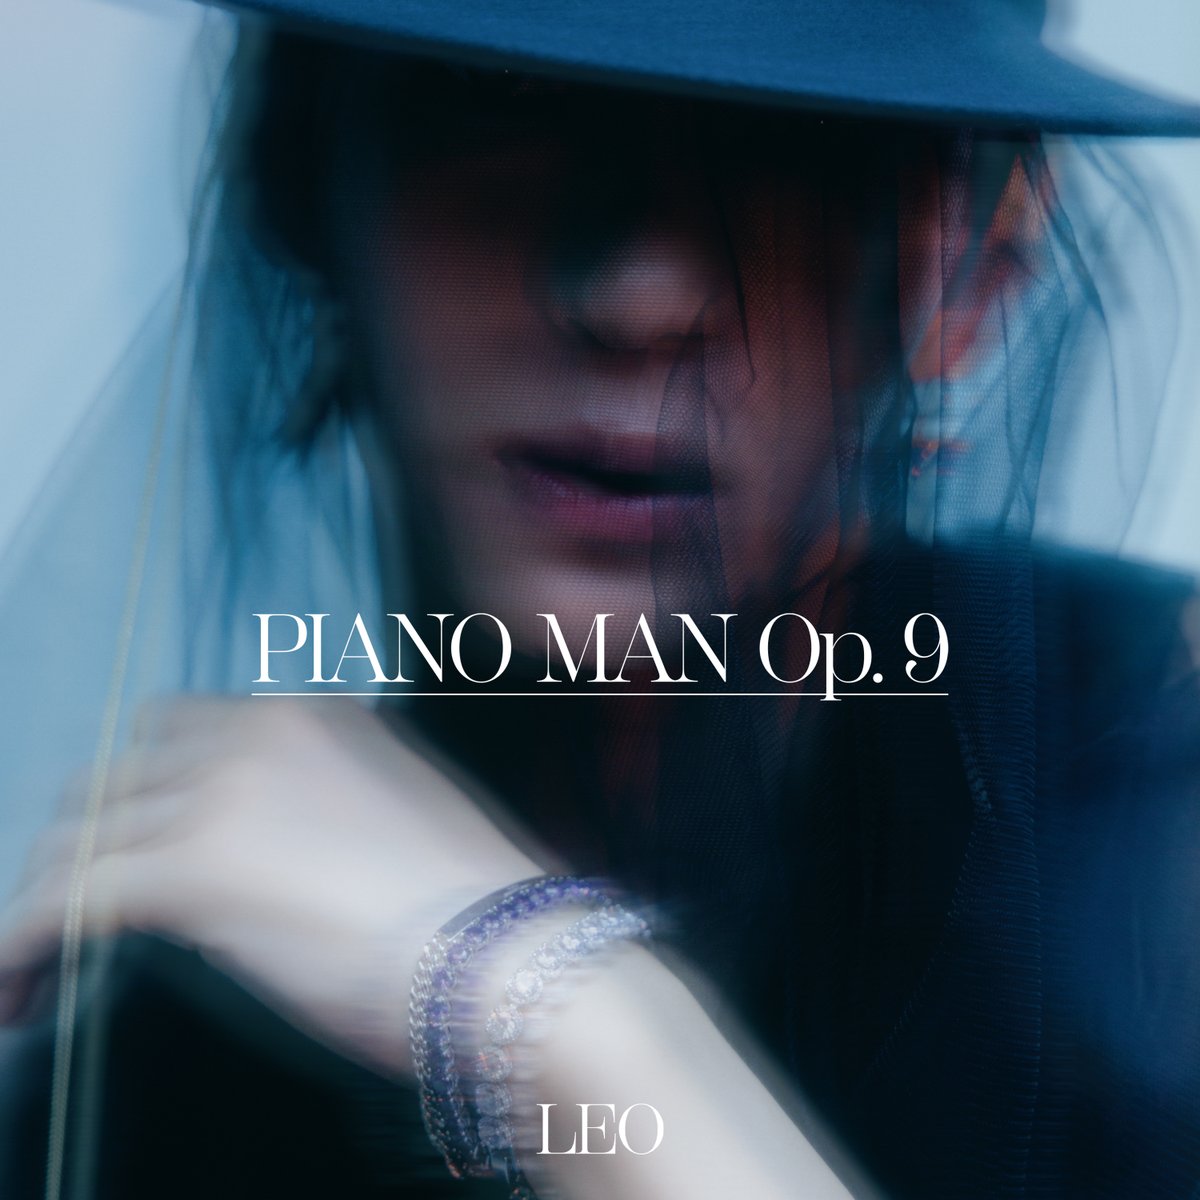 나는 로빅이다. LEO 3rd MINI ALBUM 'Piano man Op. 9' 전 곡 음원이 음원사이트를 통해 공개되었다. 스트리밍⭐다운로드로 별빛파워를 보여주길 바란다! [이상, RT작전 실행하라!]

#빅스 #VIXX #레오 #LEO #정택운
#Losing_Game
#Piano_man_Op_9
#20220823_6PM